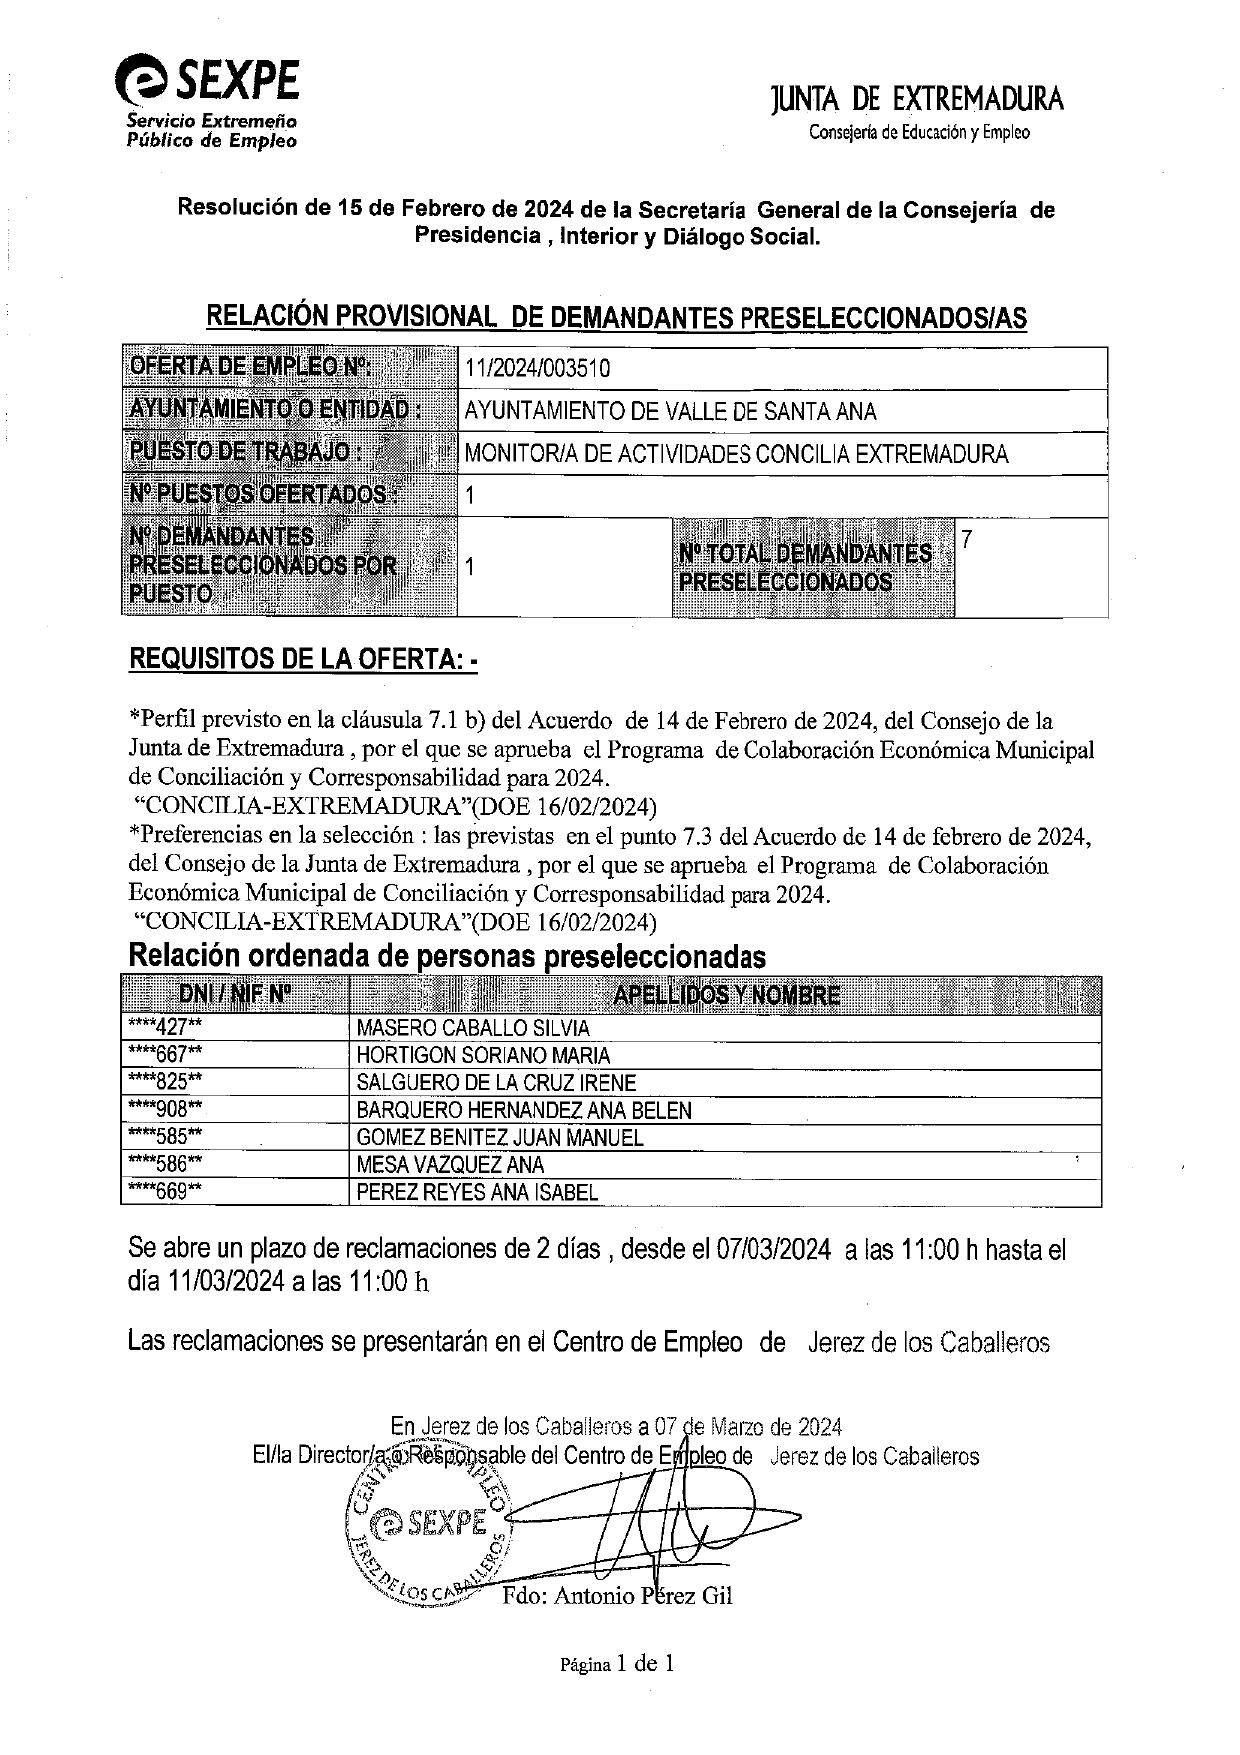 RELACIÓN PROVISIONAL DE DEMANDANTES PRESELECCIONADOS/AS PARA MONITOR/A DE ACTIVIDADES CONCILIA EXTREMADURA